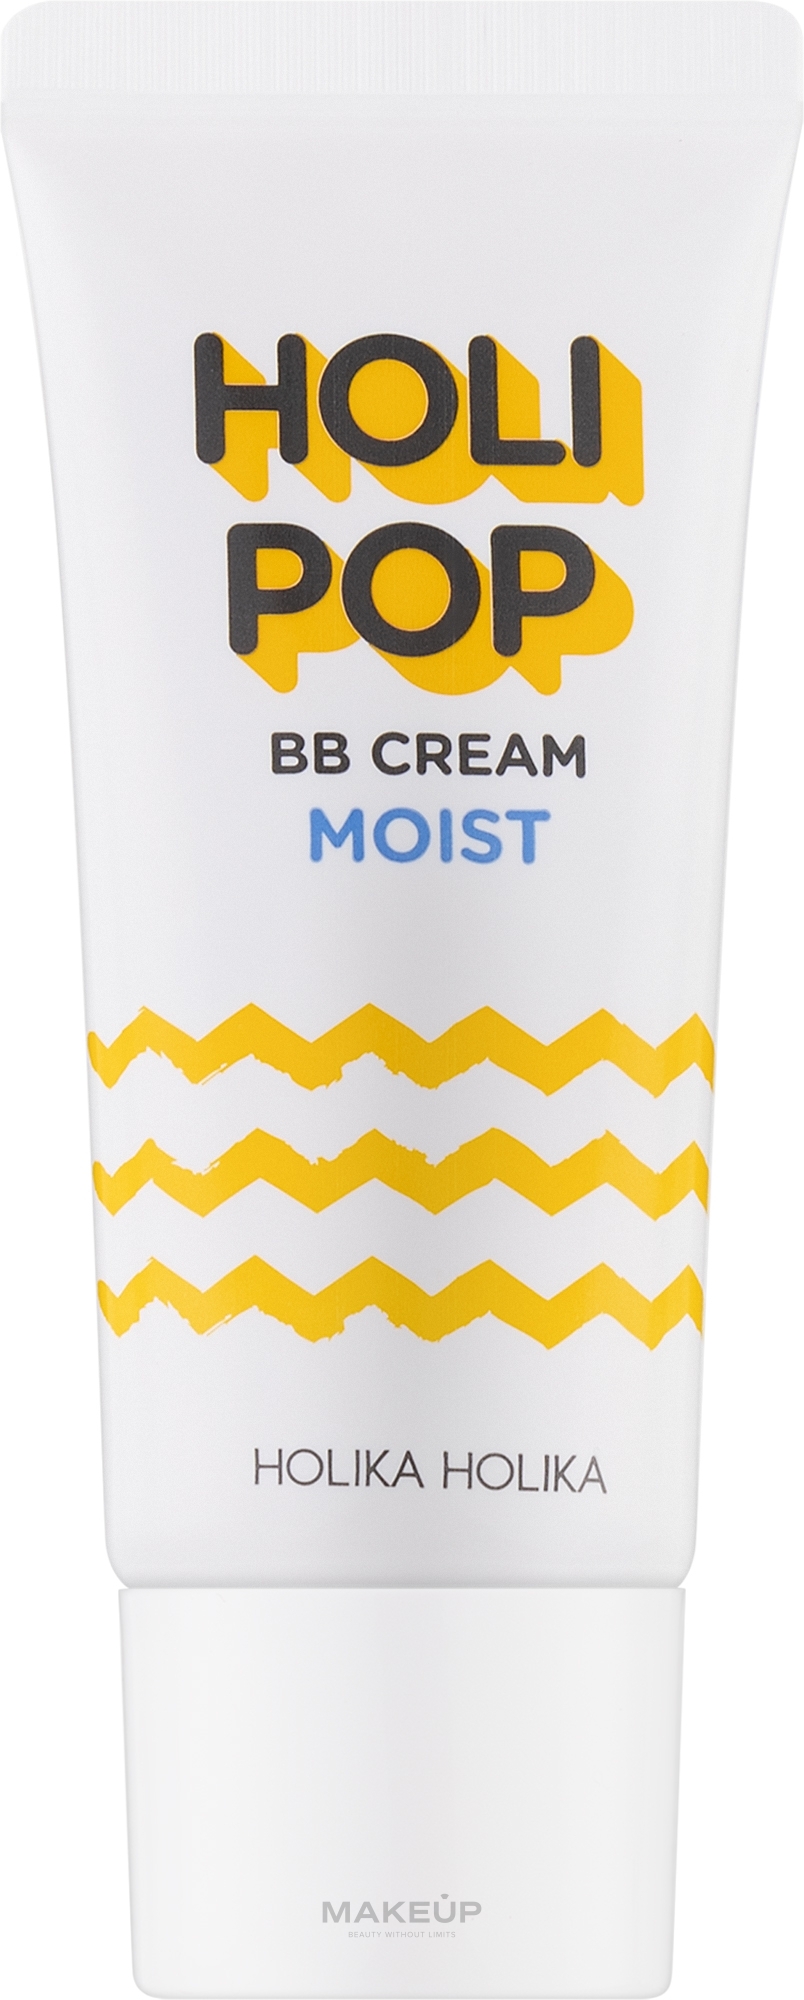 Увлажняющий BB крем - Holika Holika Holi Pop Moist BB Cream — фото 30ml